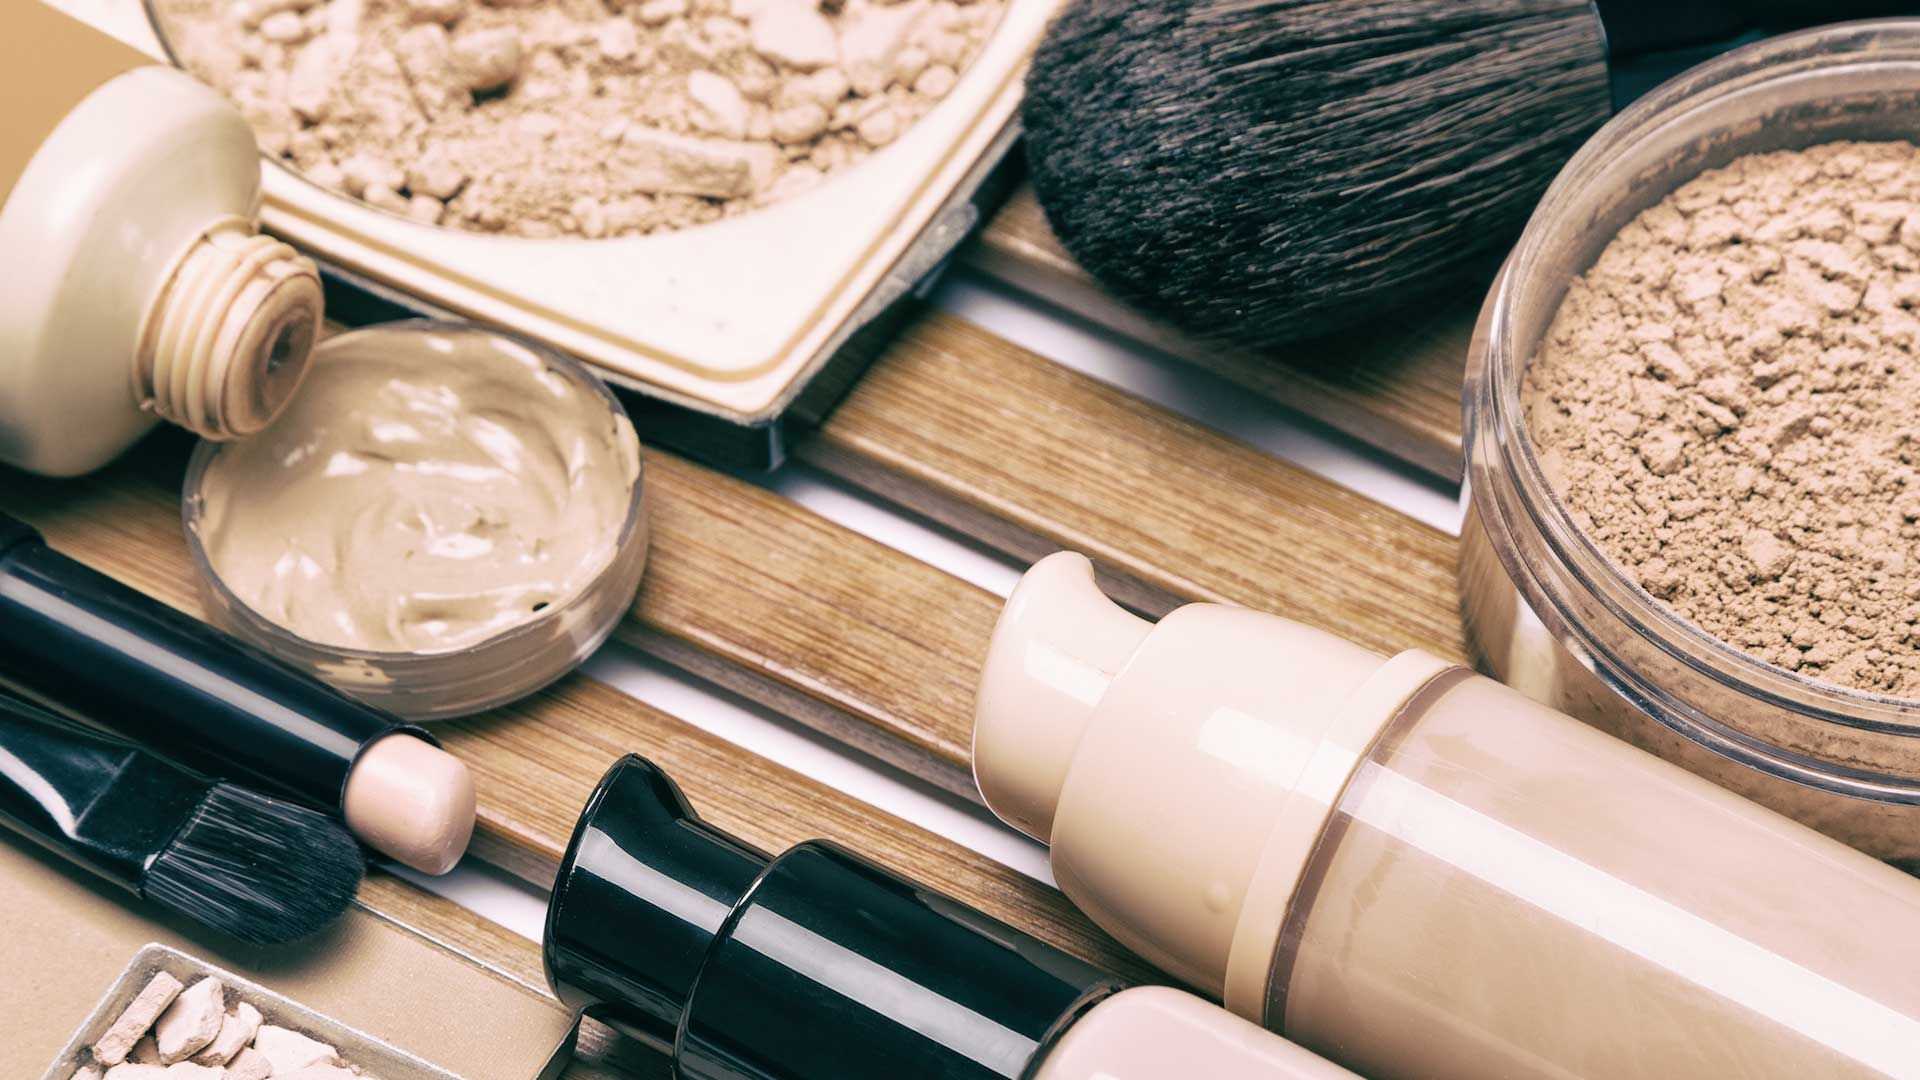 Как отстирать тональный крем с одежды: 10 методов вывести пятно